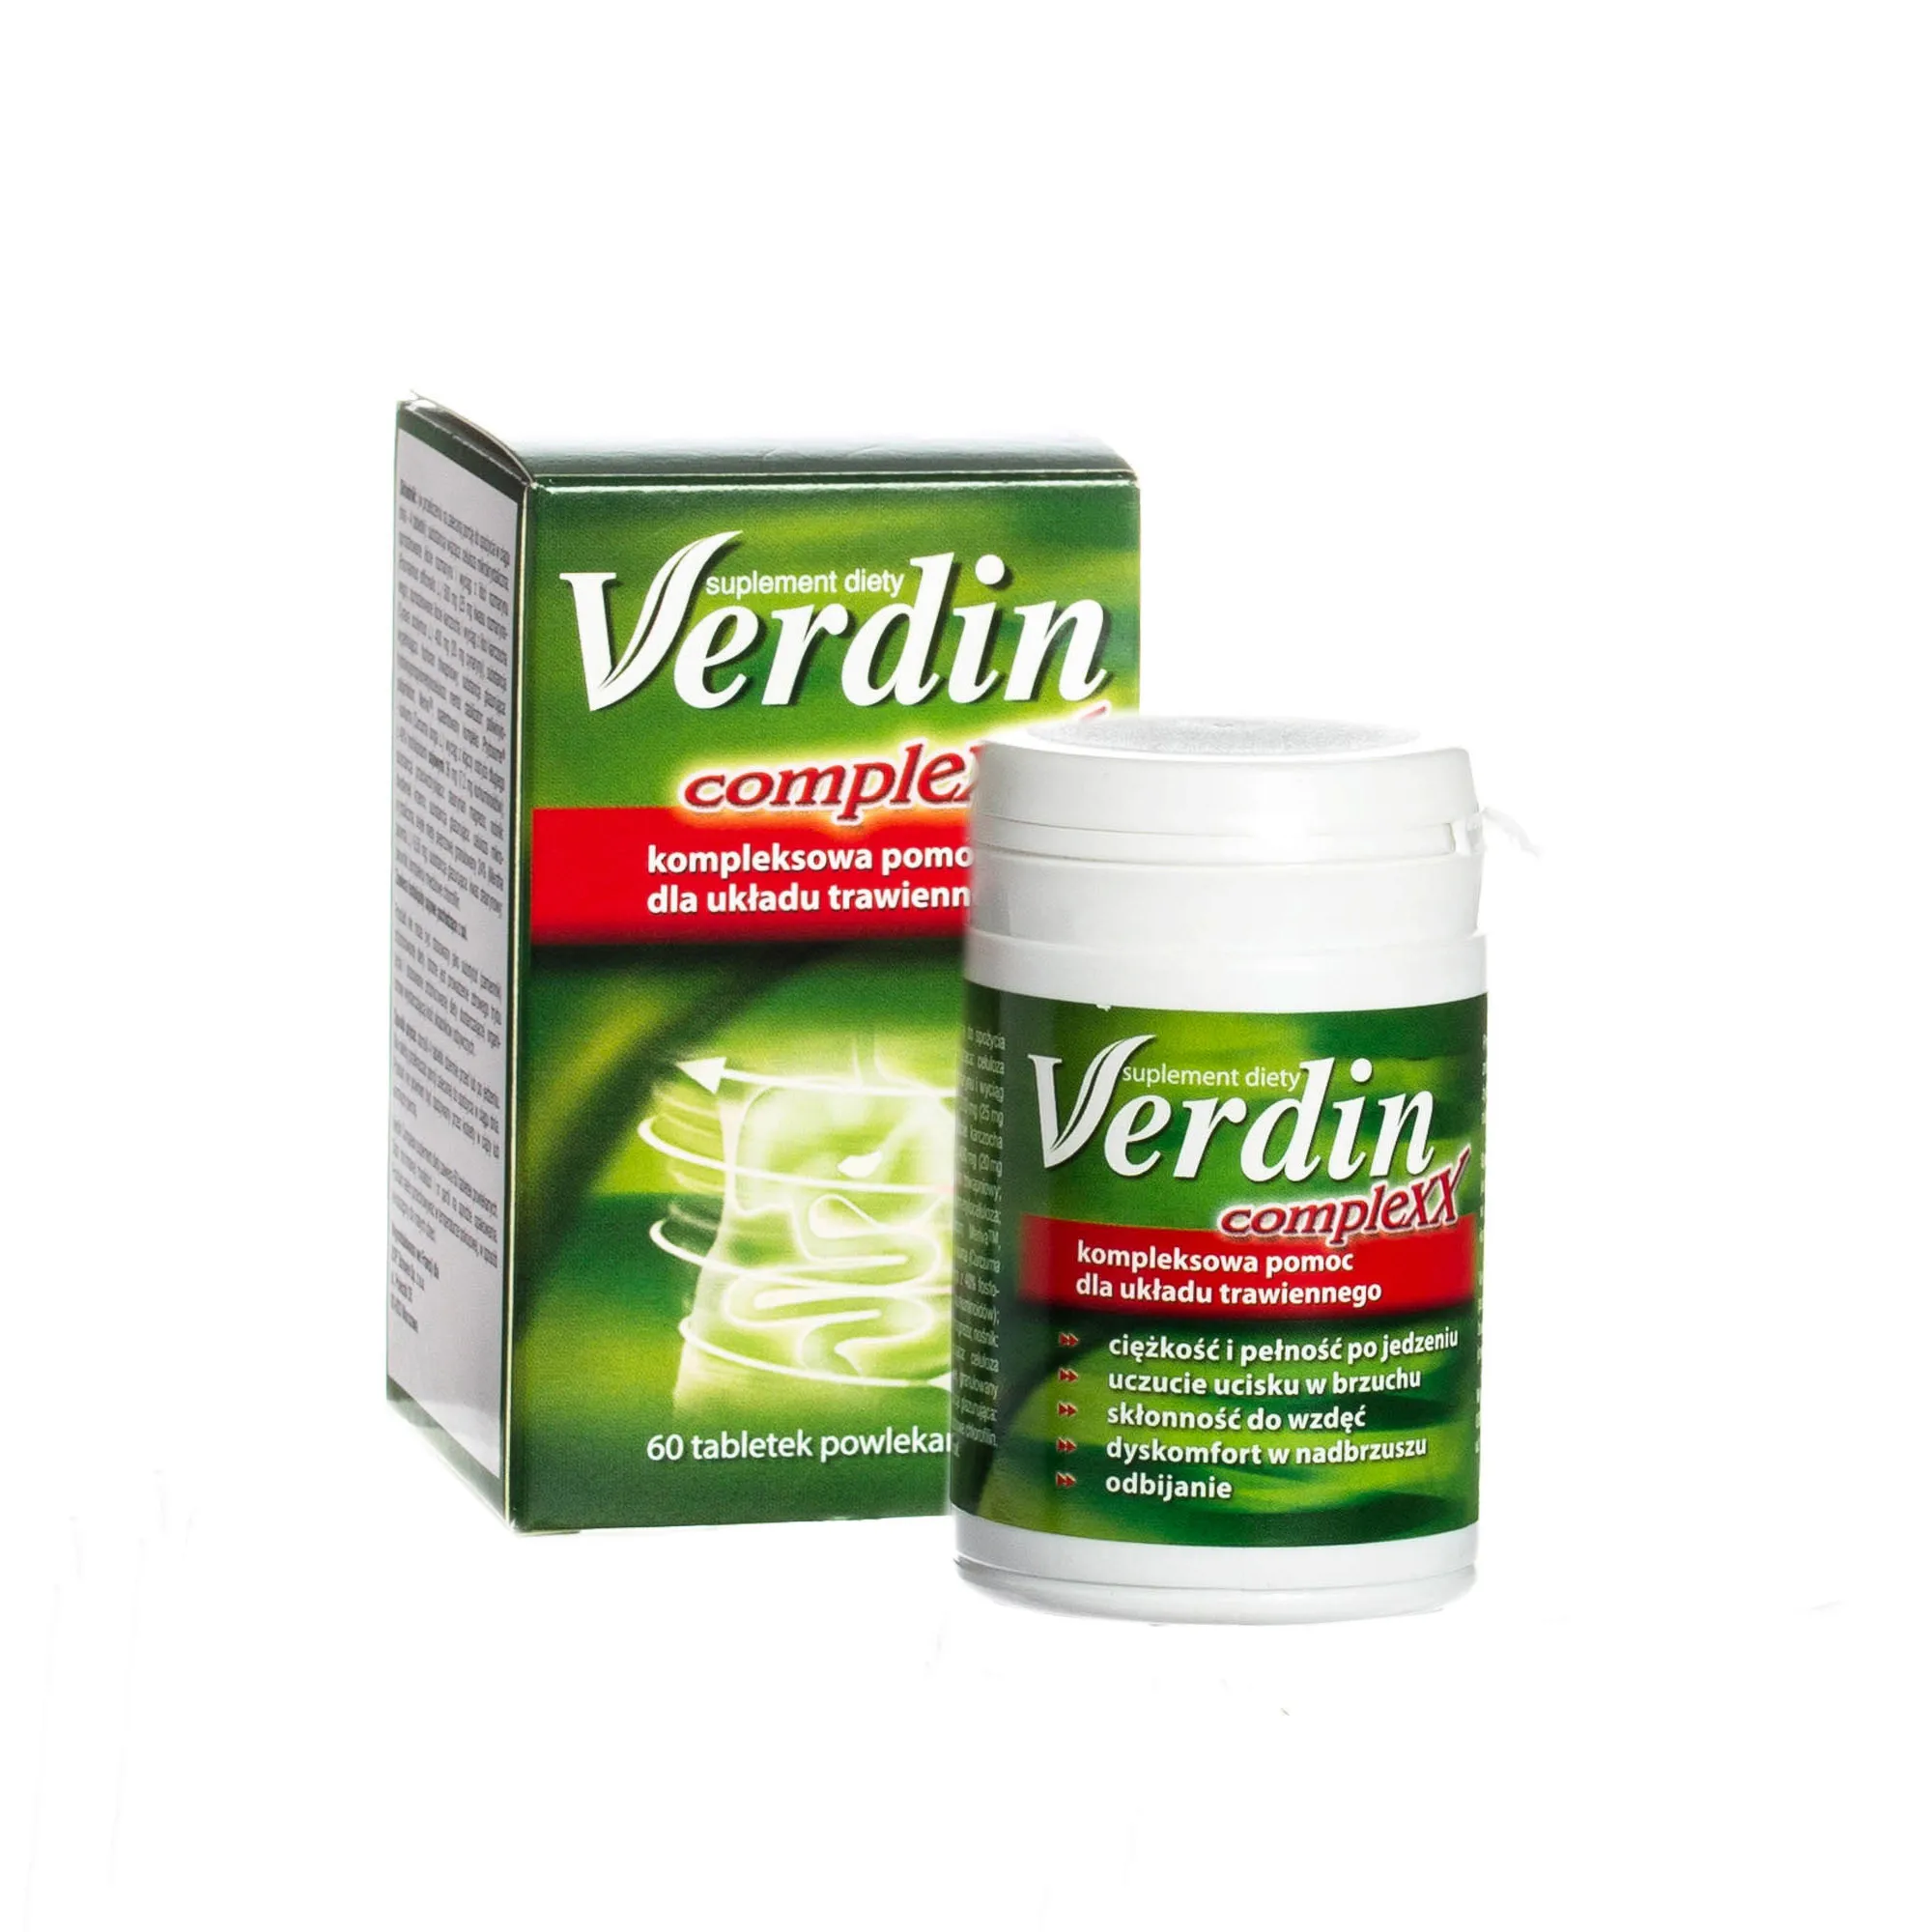 Verdin Complexx - suplement diety wspomagający pracę układu trawiennego, 60 tabletek powlekanych.